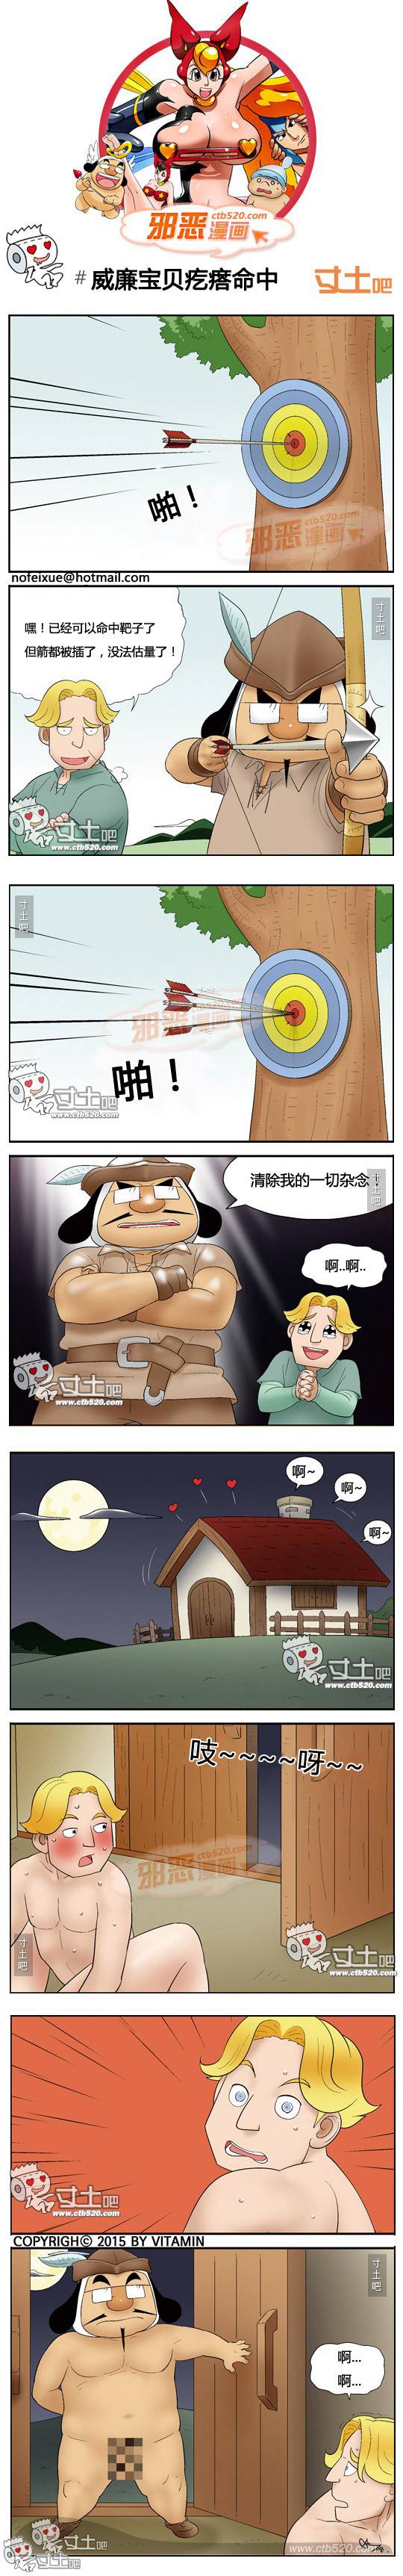 邪恶漫画爆笑囧图第316刊：痛苦的理由